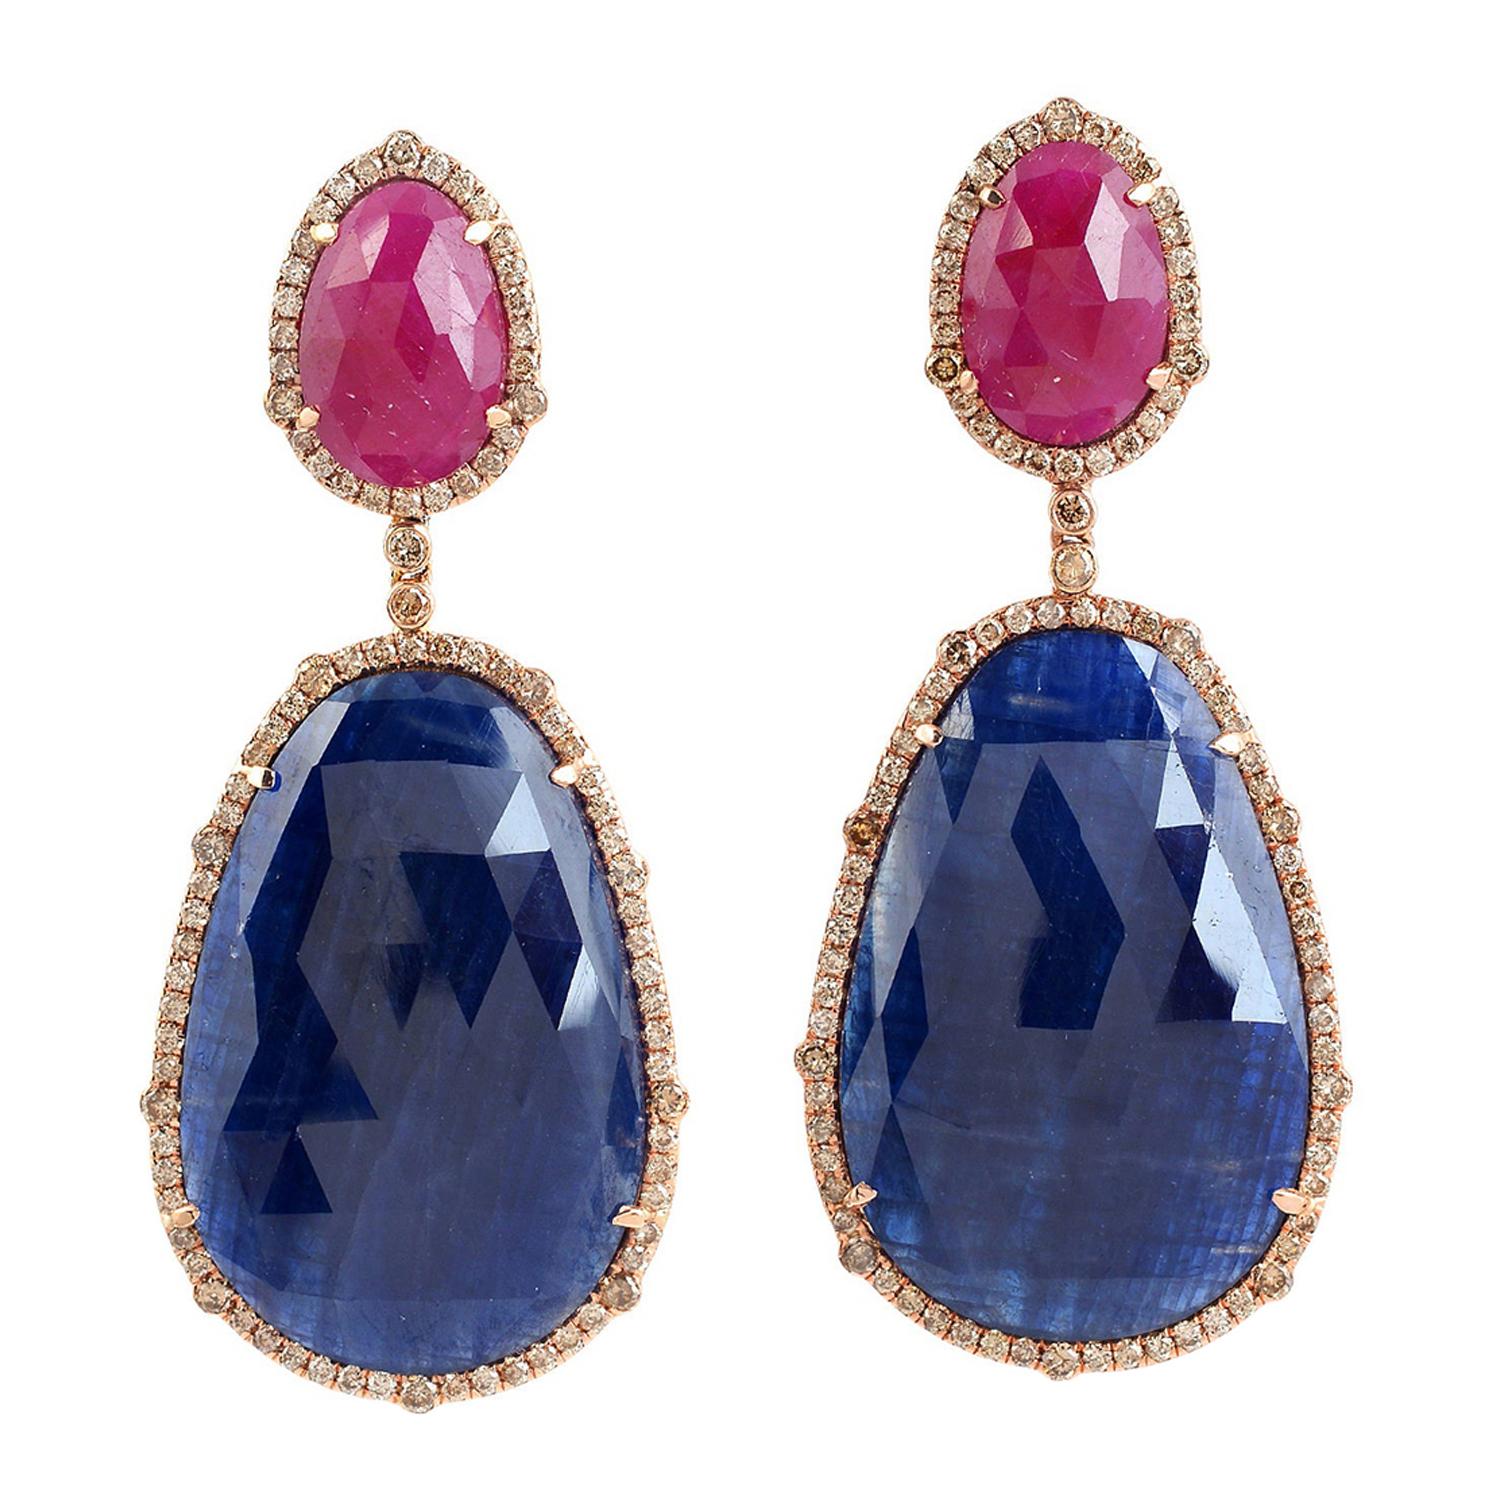 Boucles d'oreilles en or 18 carats serties de rubis et de saphirs en tranches, avec diamants